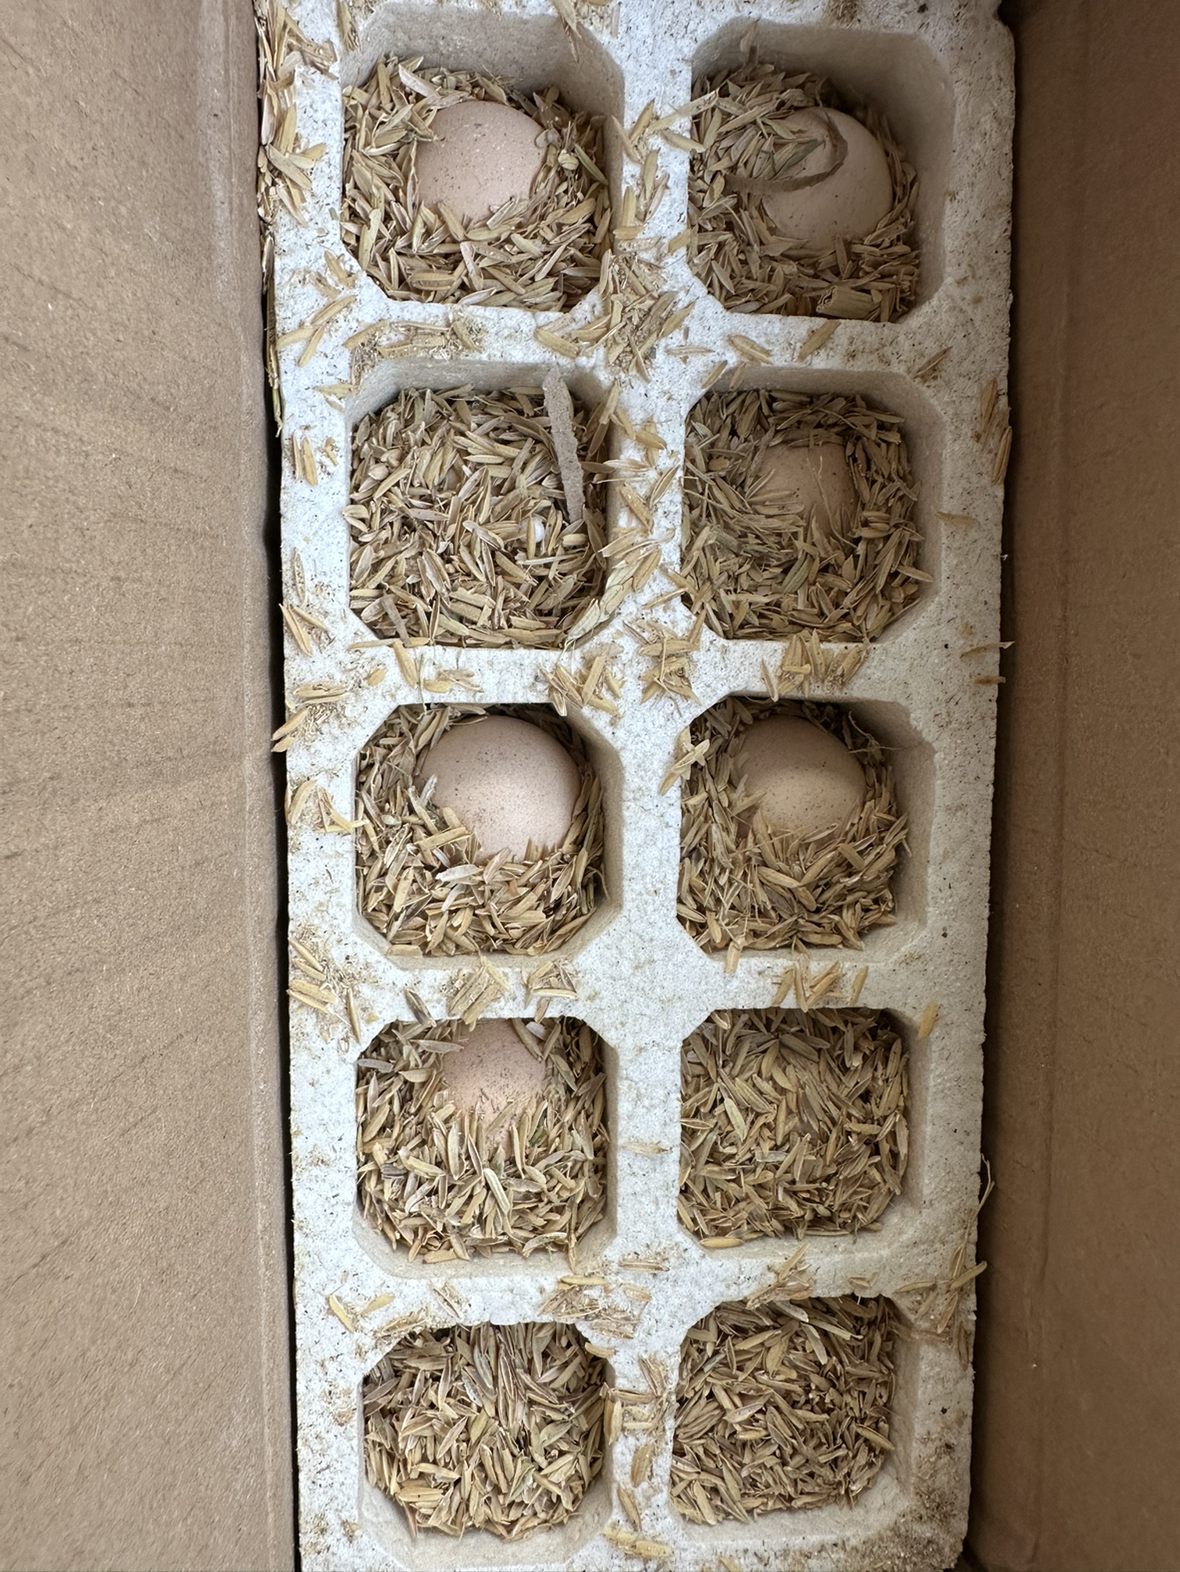 [苏鲜生] 新鲜谷物蛋 10 枚装 农家散养新鲜正宗草鸡蛋笨柴鸡蛋孕妇月子蛋整箱禽蛋晒单图